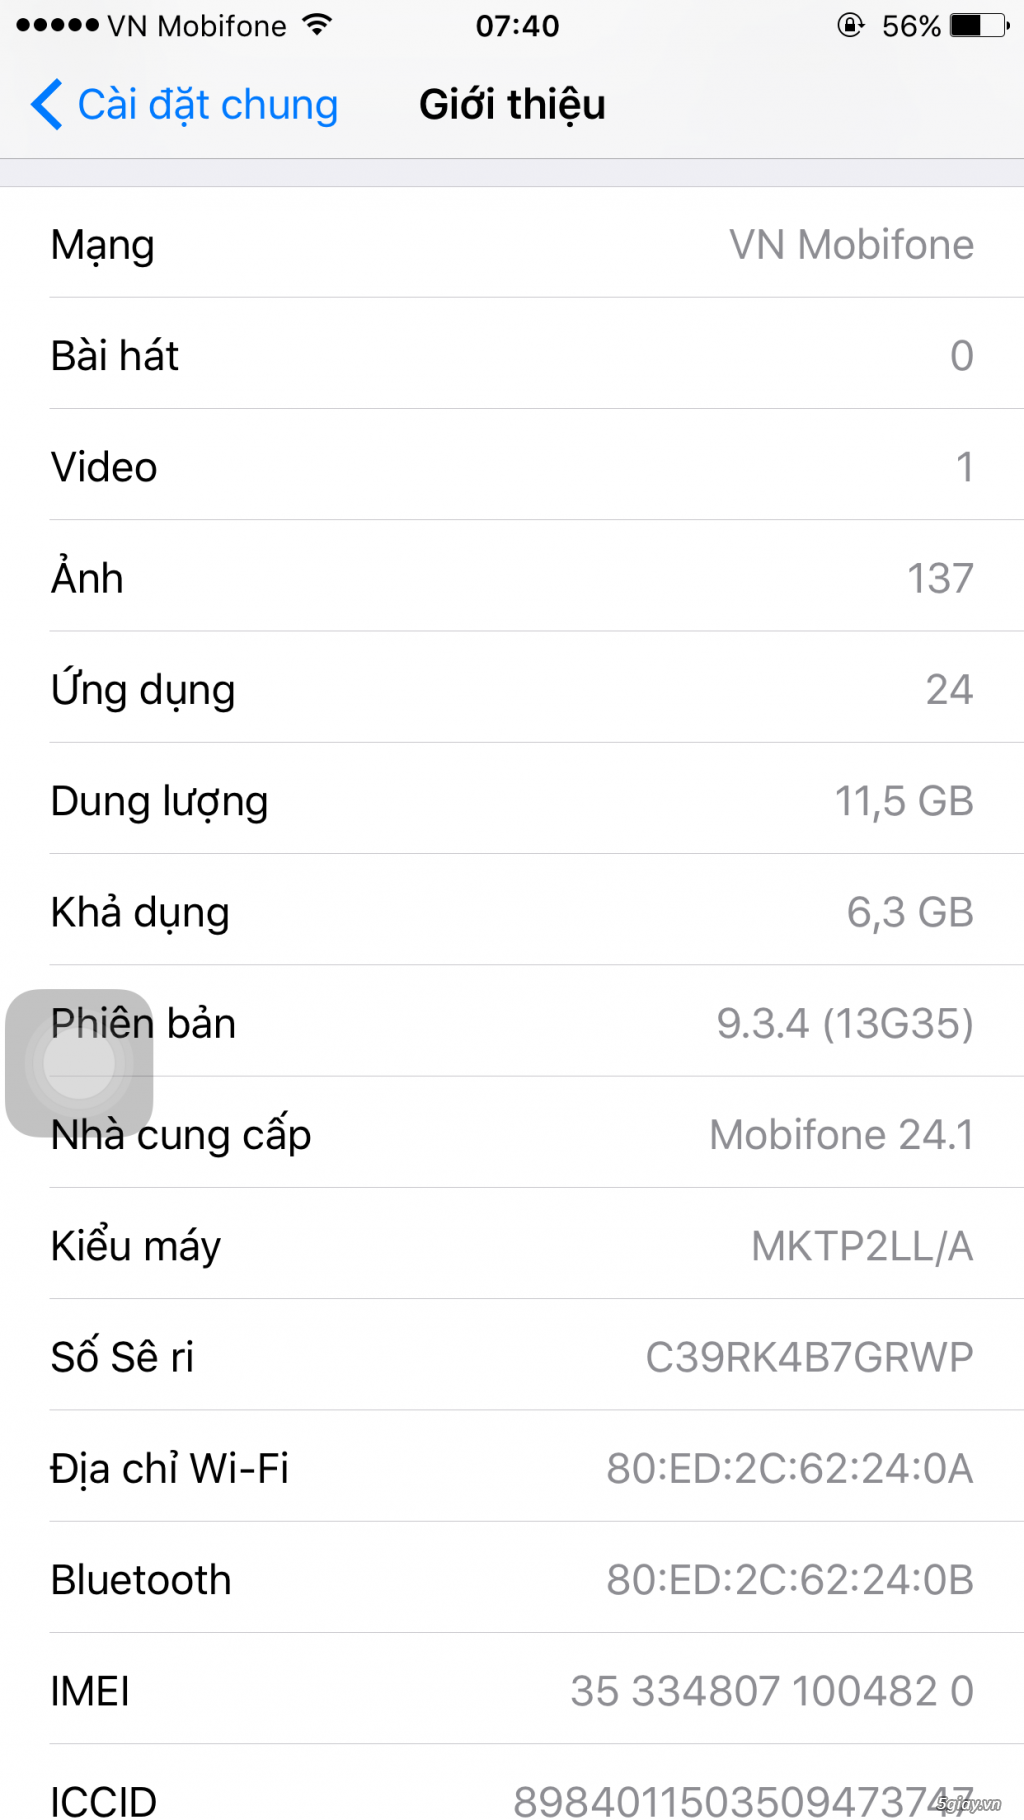 Iphone 6s plus rose gold 16gb